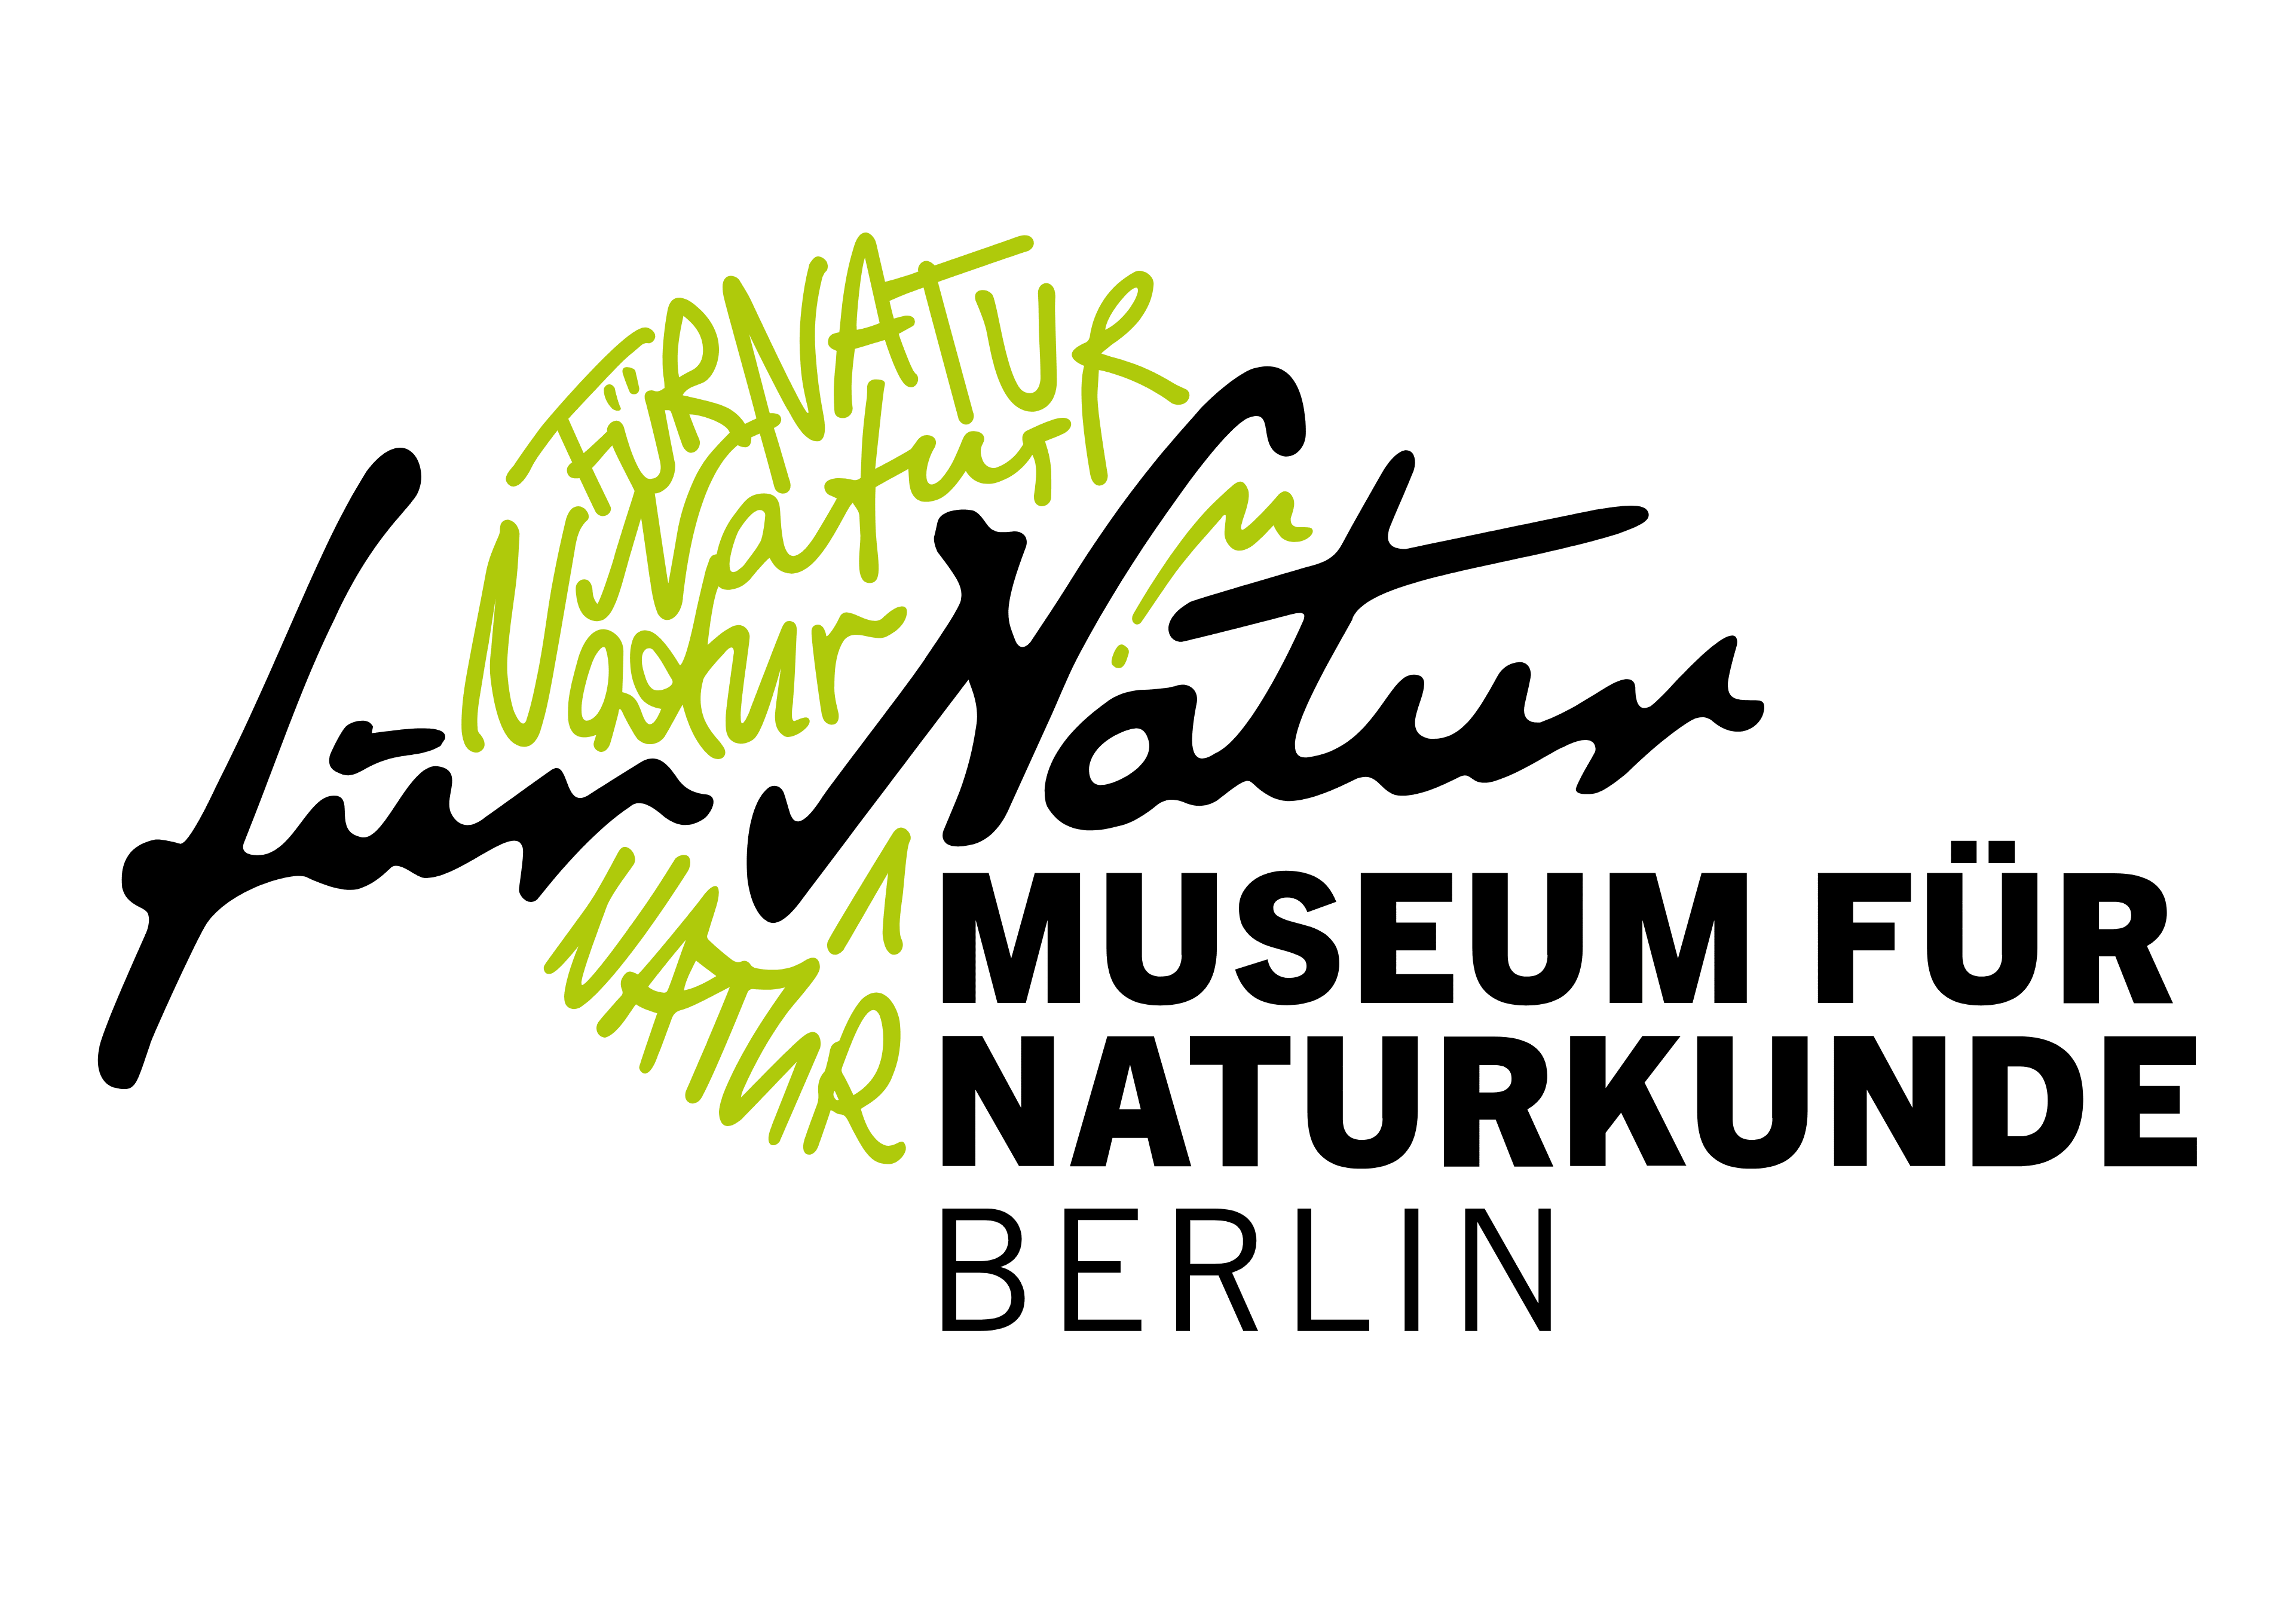 Musuem für Naturkunde Berlin logo